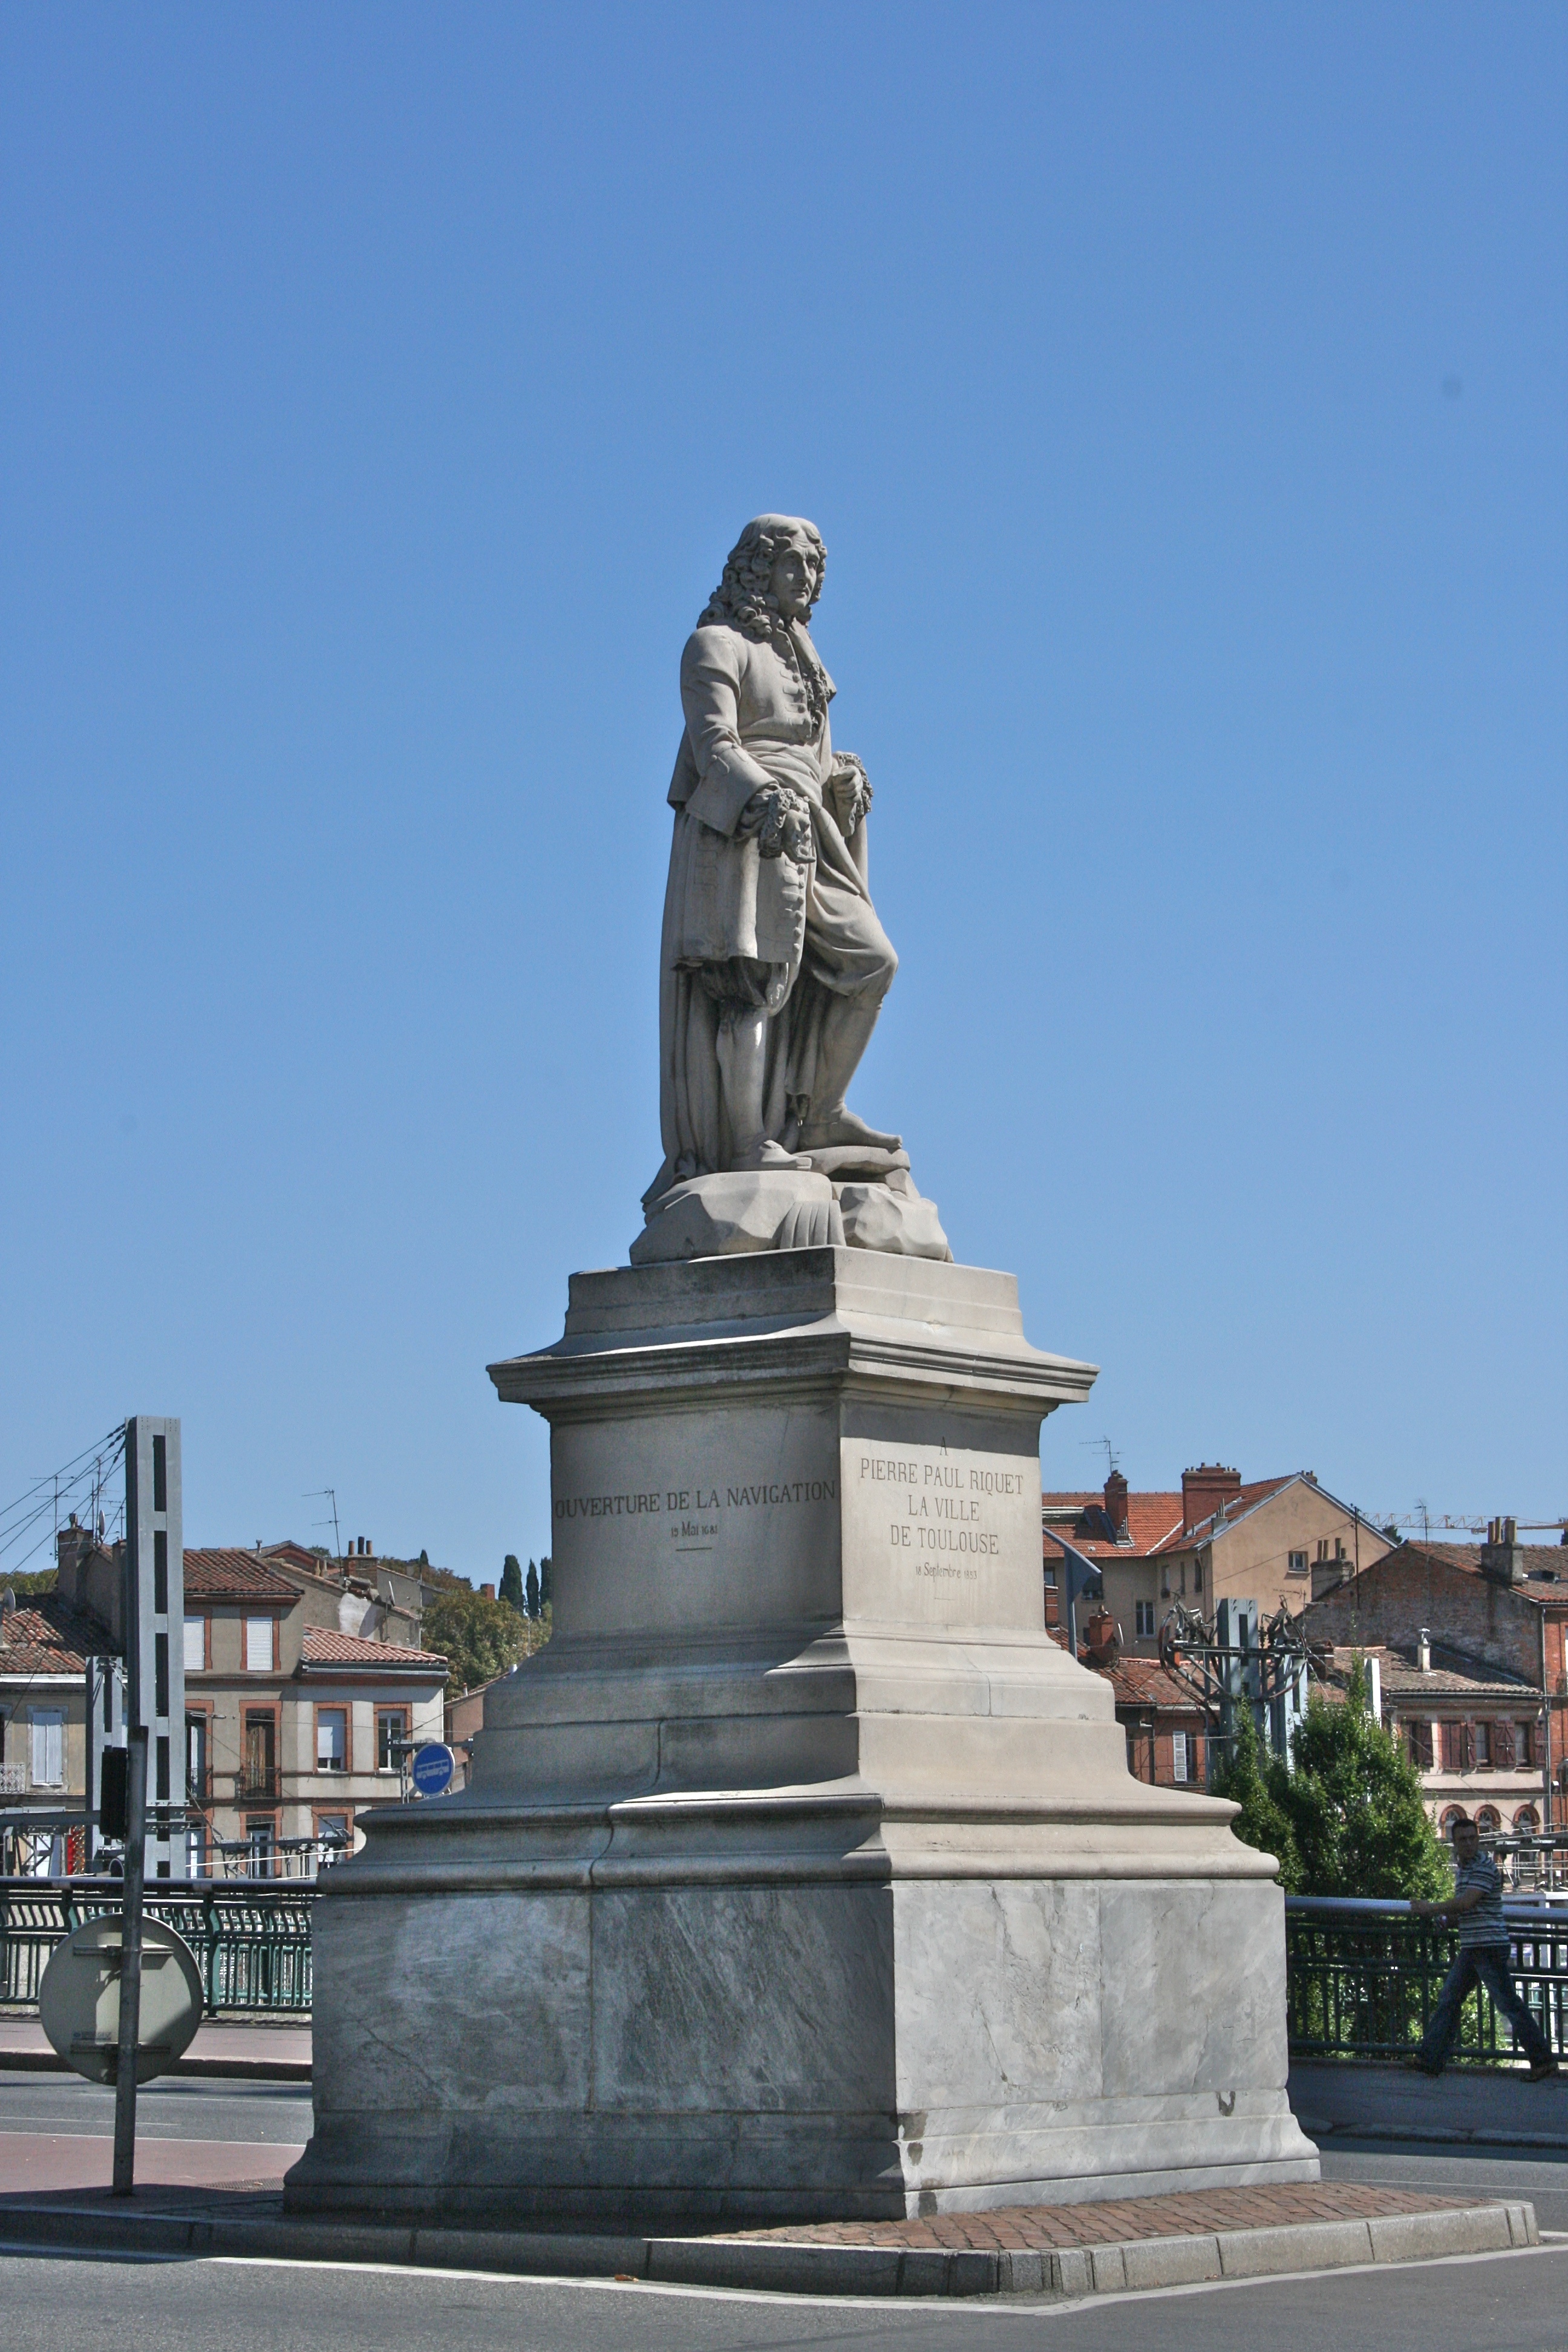 Statue of Pierre Paul Riquet